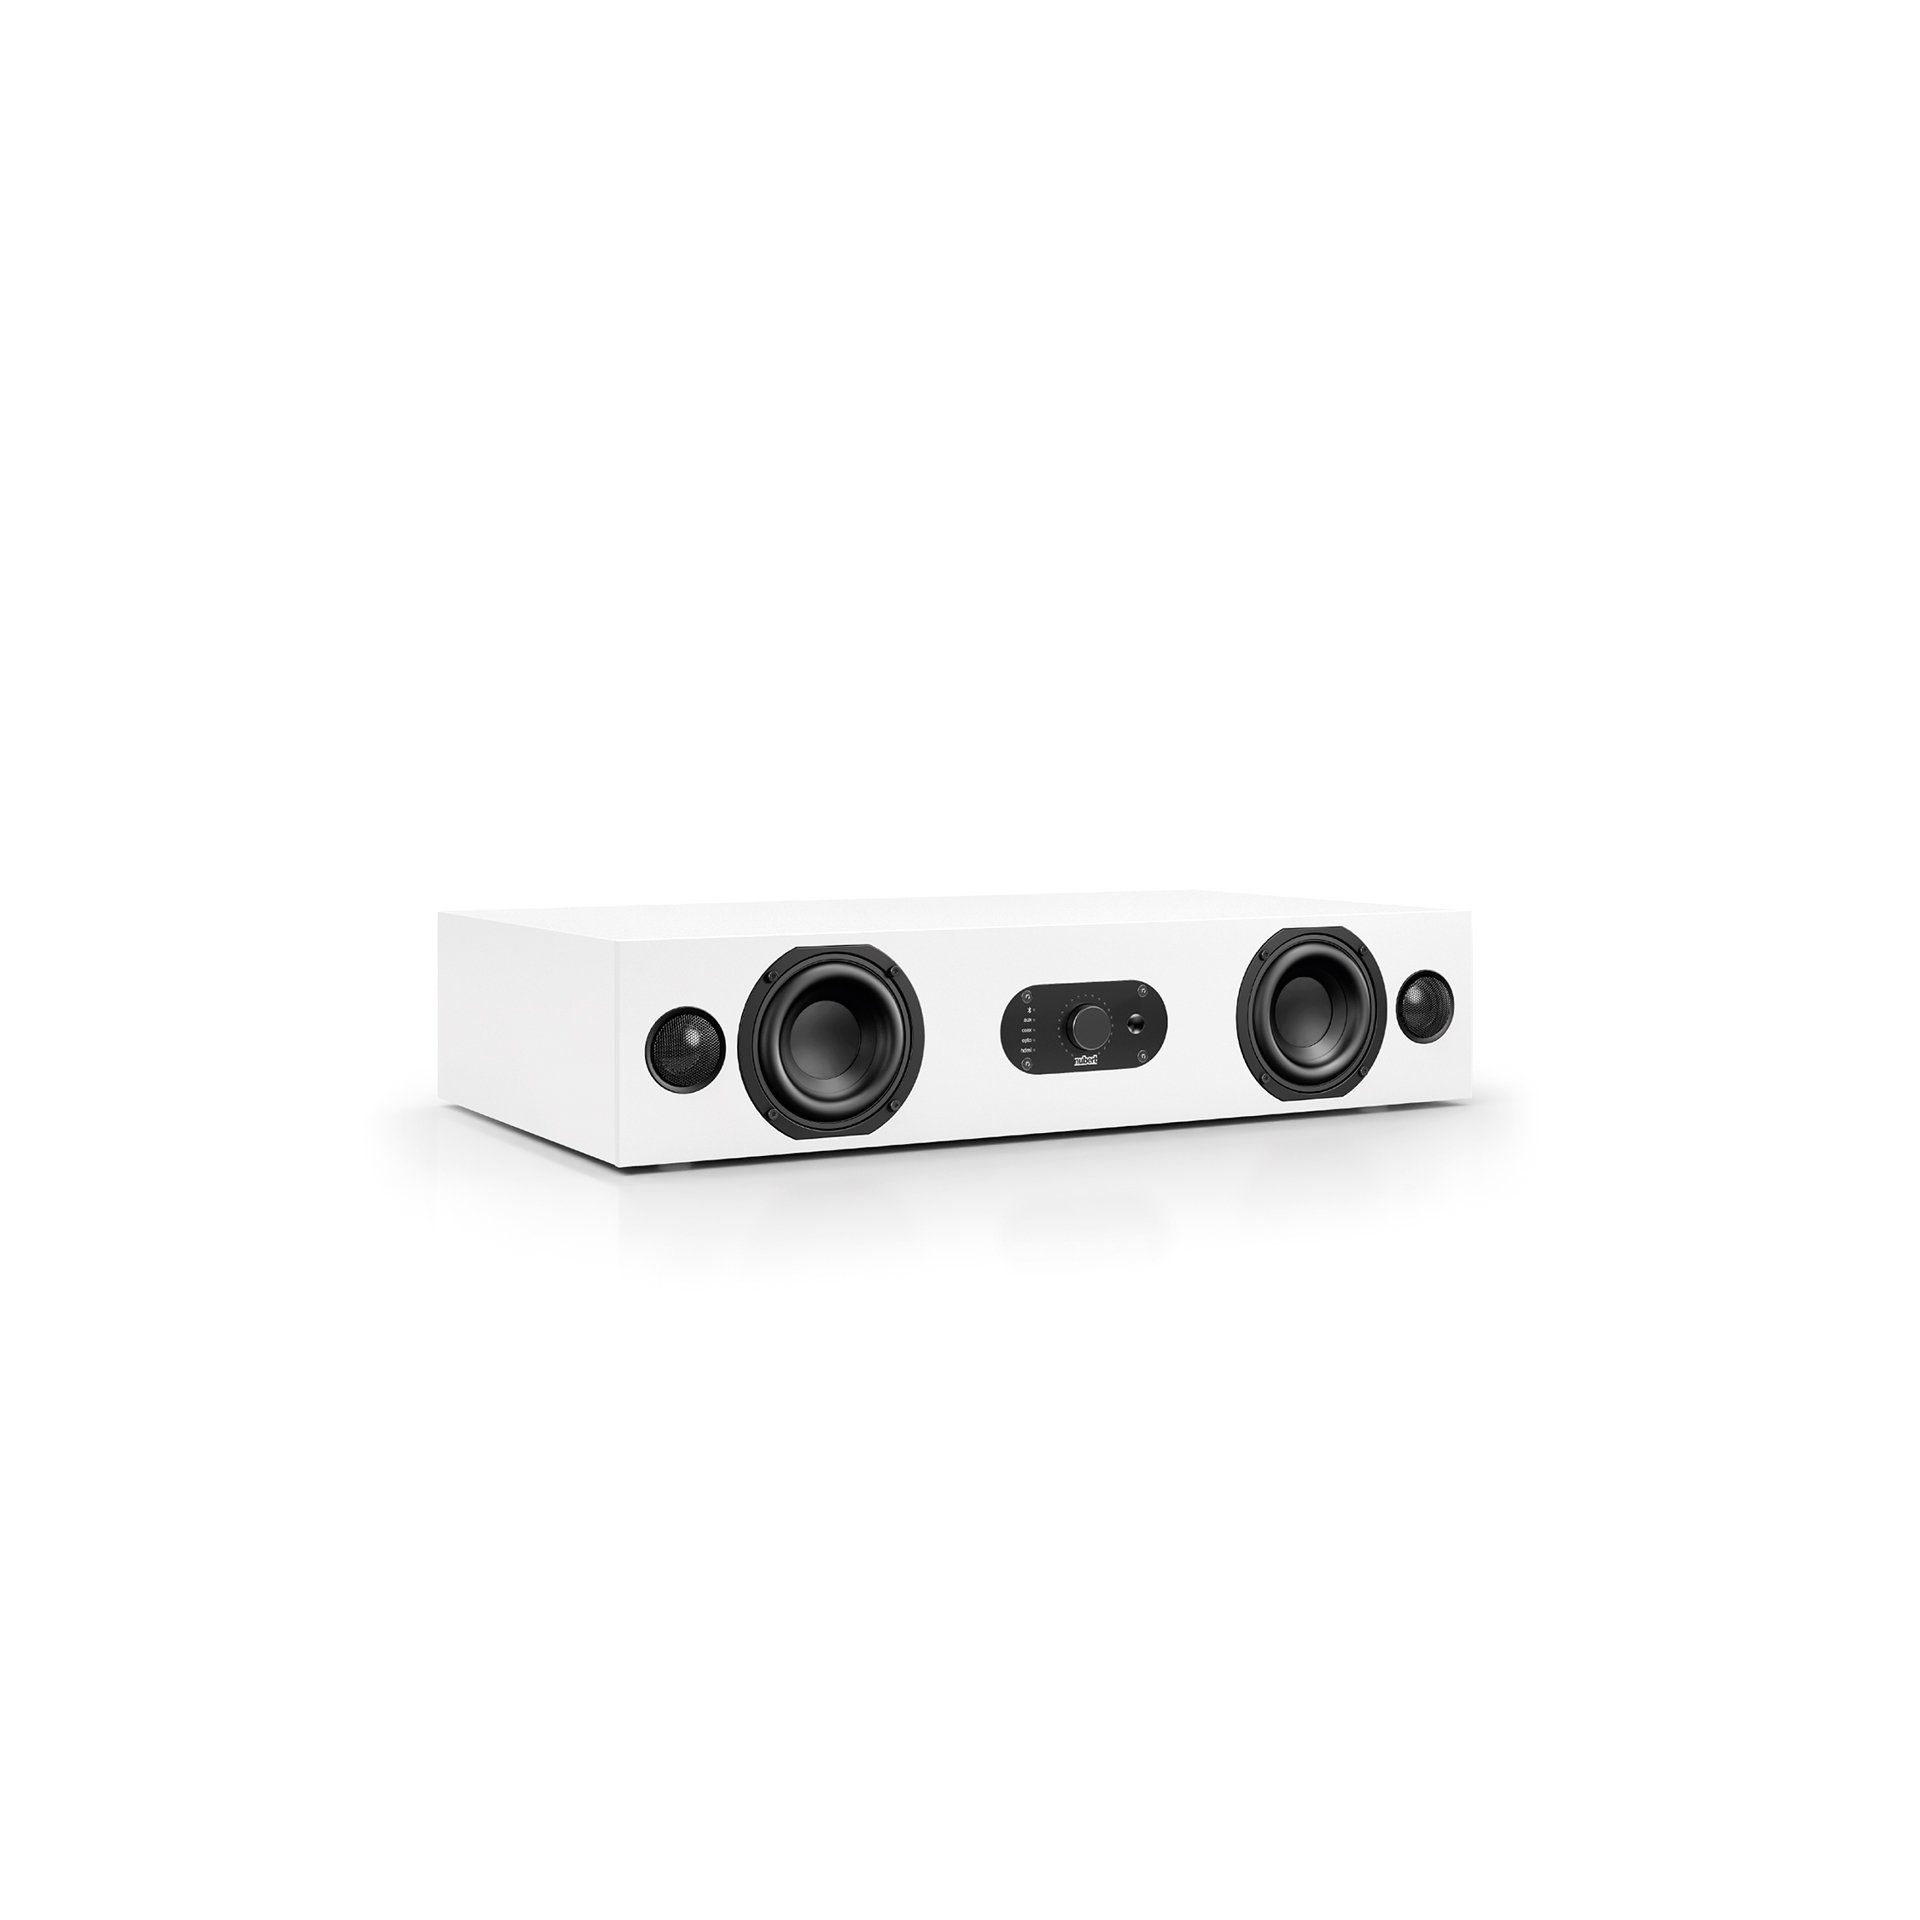 Nubert nuBoxx AS-225 max Soundbar (180 W, Bluetooth 5.0 aptX HD und Dolby Digital Decoder, Voice+, HDMI eARC) Weiß mit Weißer Front